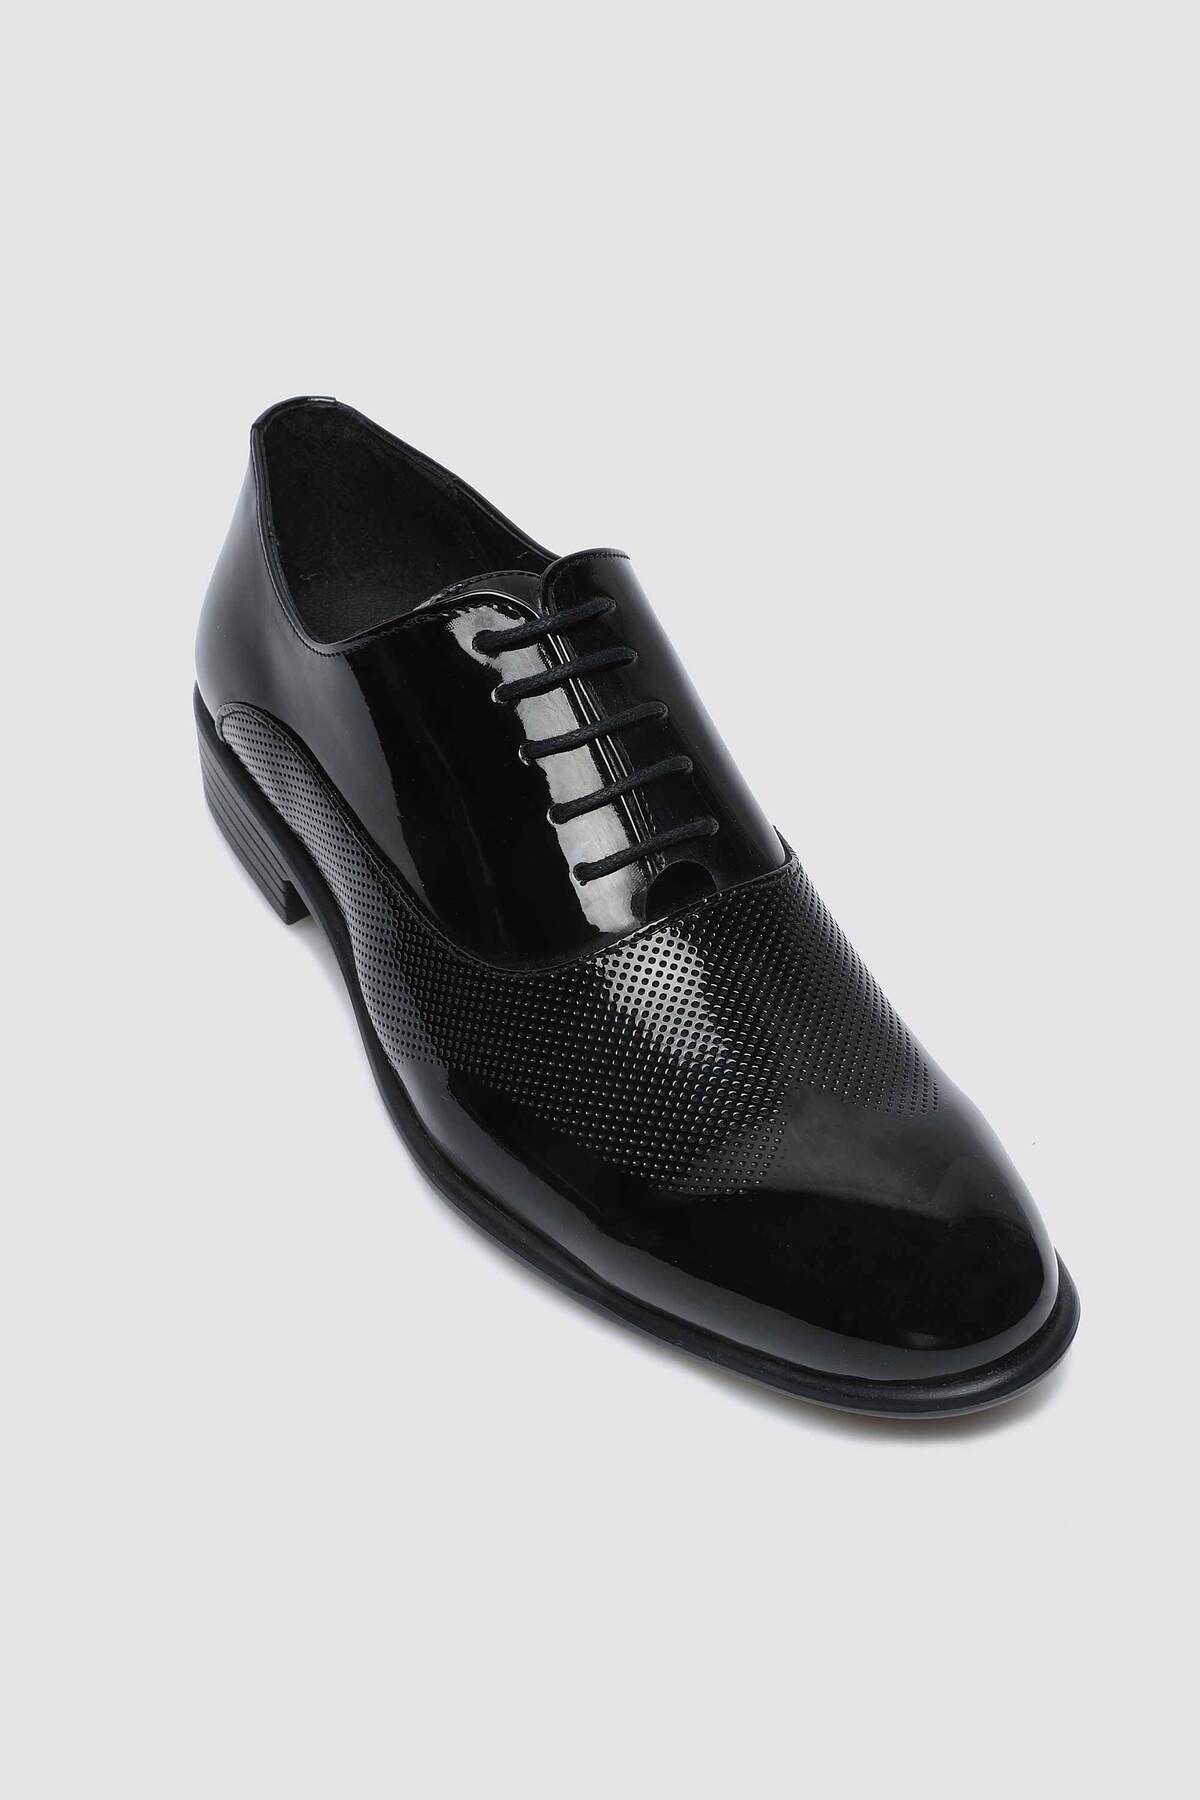 D'S Damat Siyah Klasik Smokin Ayakkabı